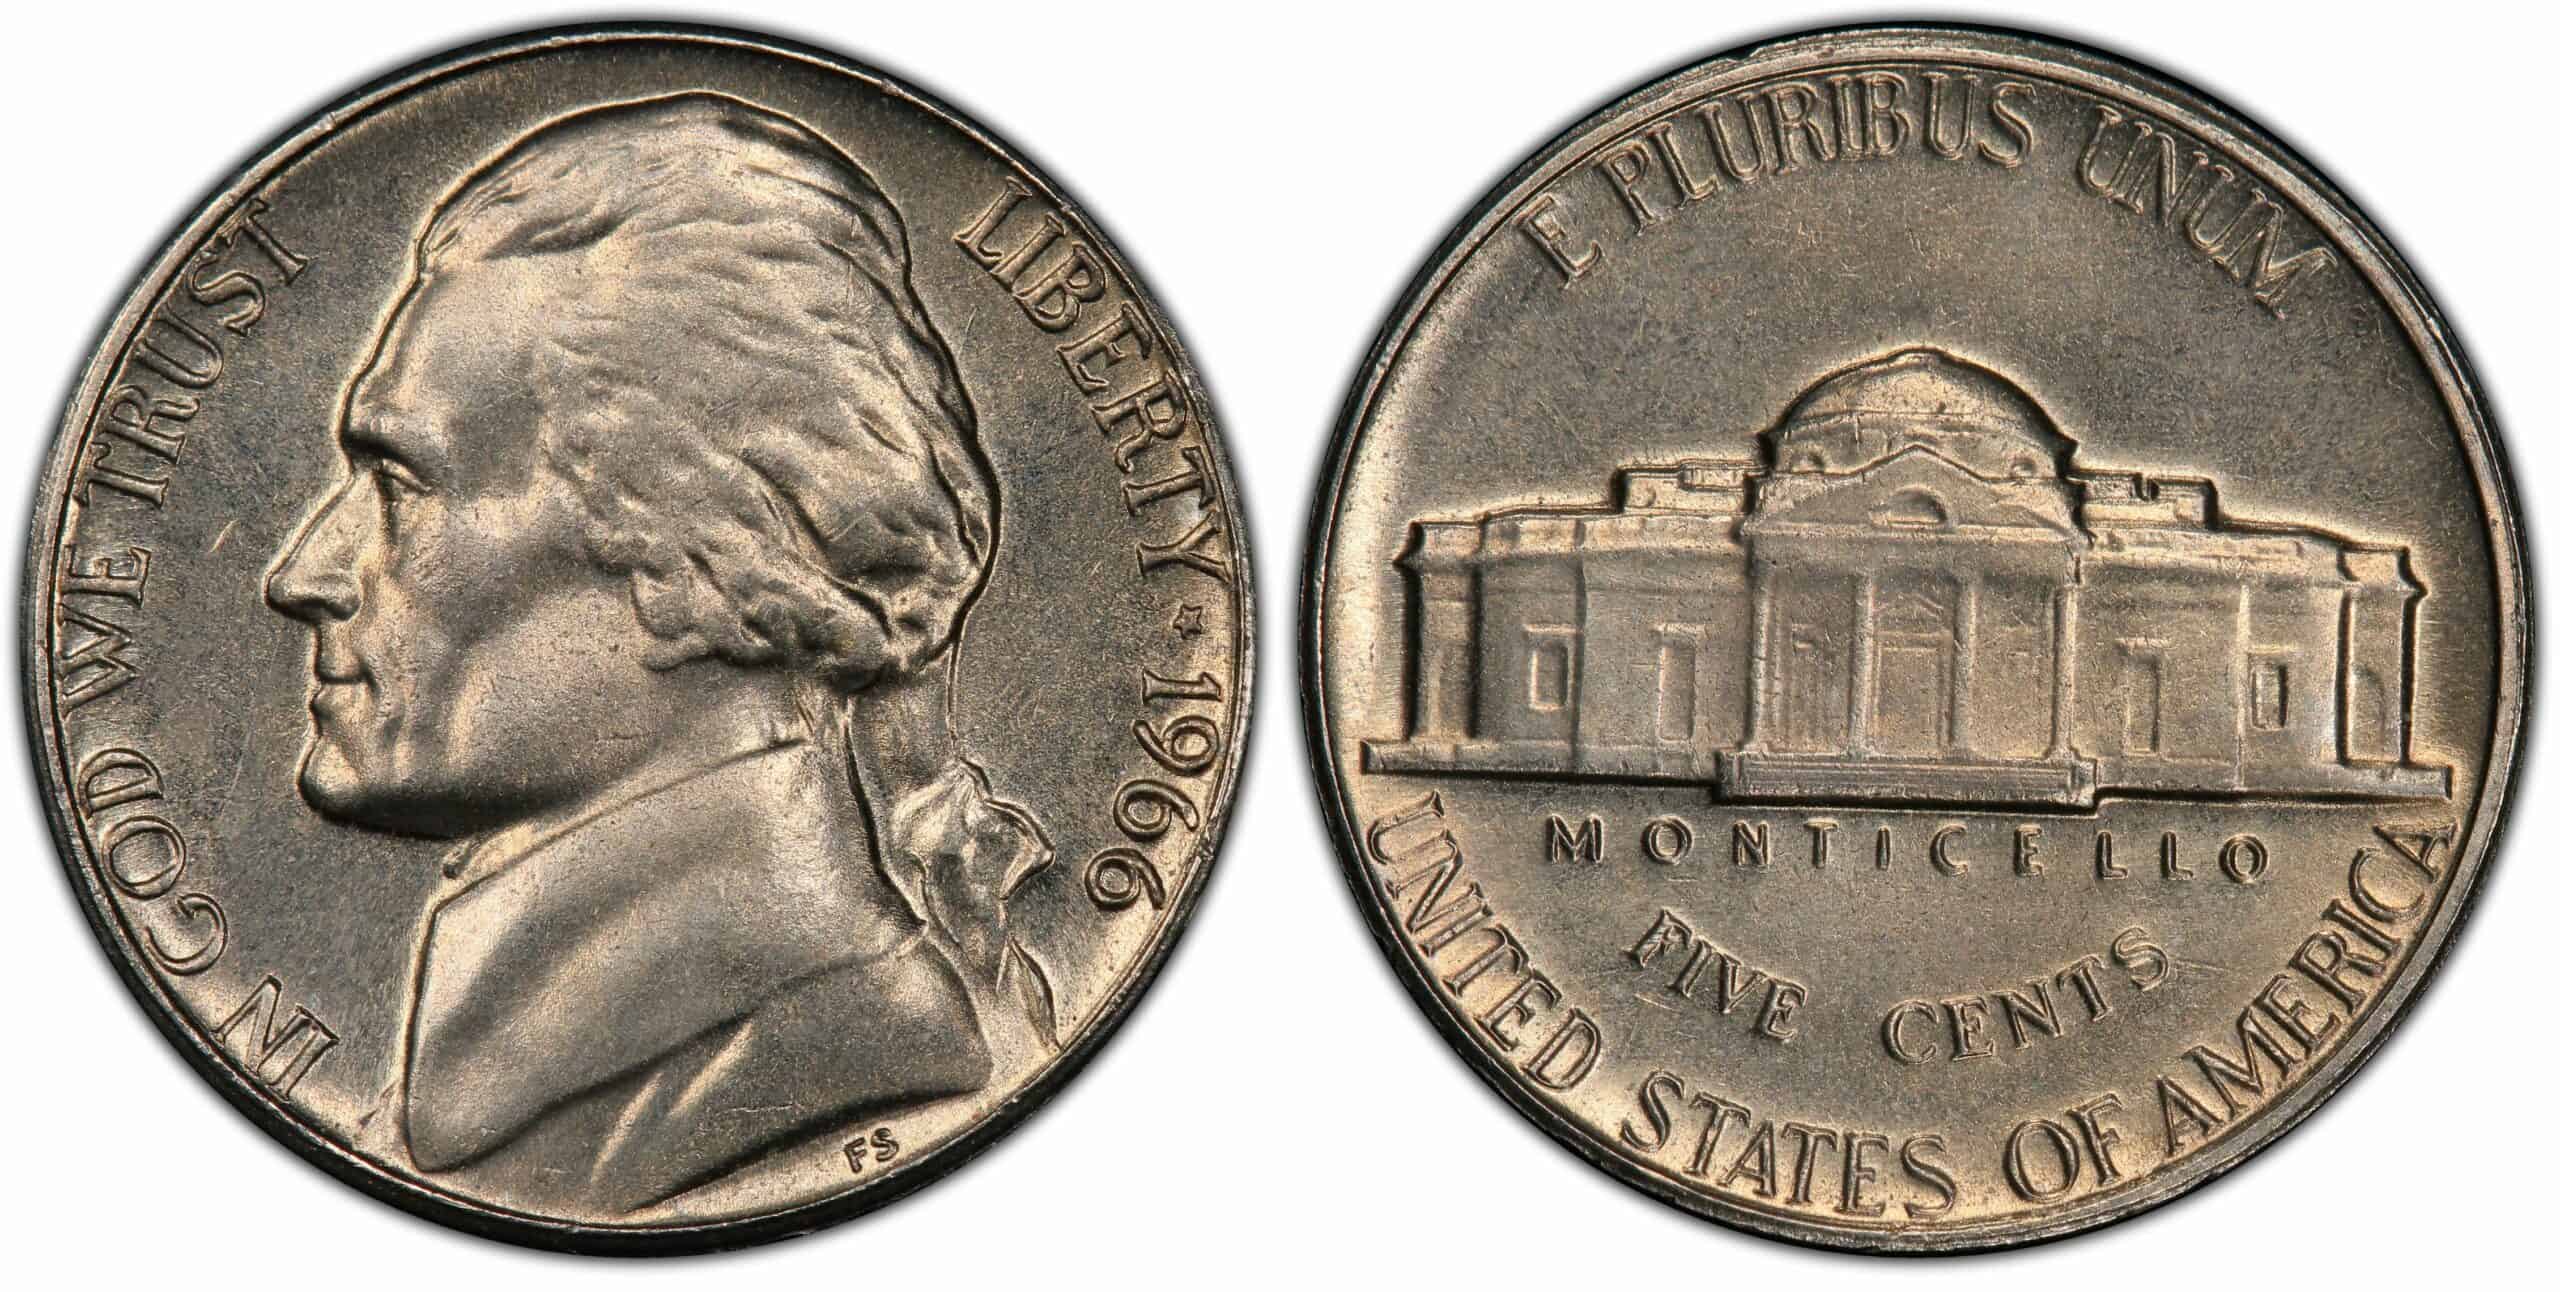 1966 No Mint Mark Nickel Value